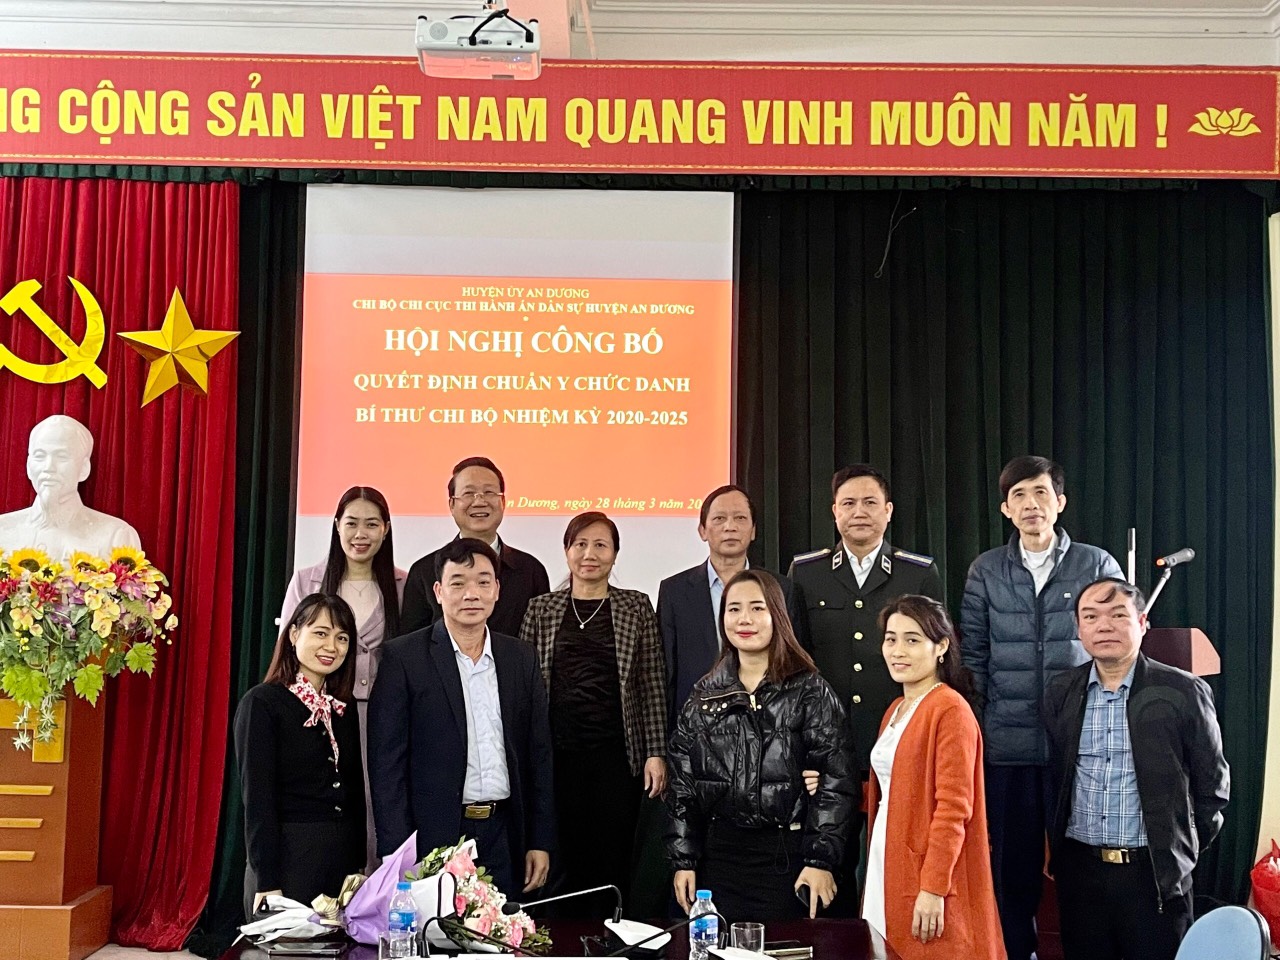 Huyện ủy An Dương tổ chức công bố Quyết định chuẩn y chức danh Bí thư Chi bộ Chi cục Thi hành án dân sự huyện An Dương nhiệm kỳ 2020-2025